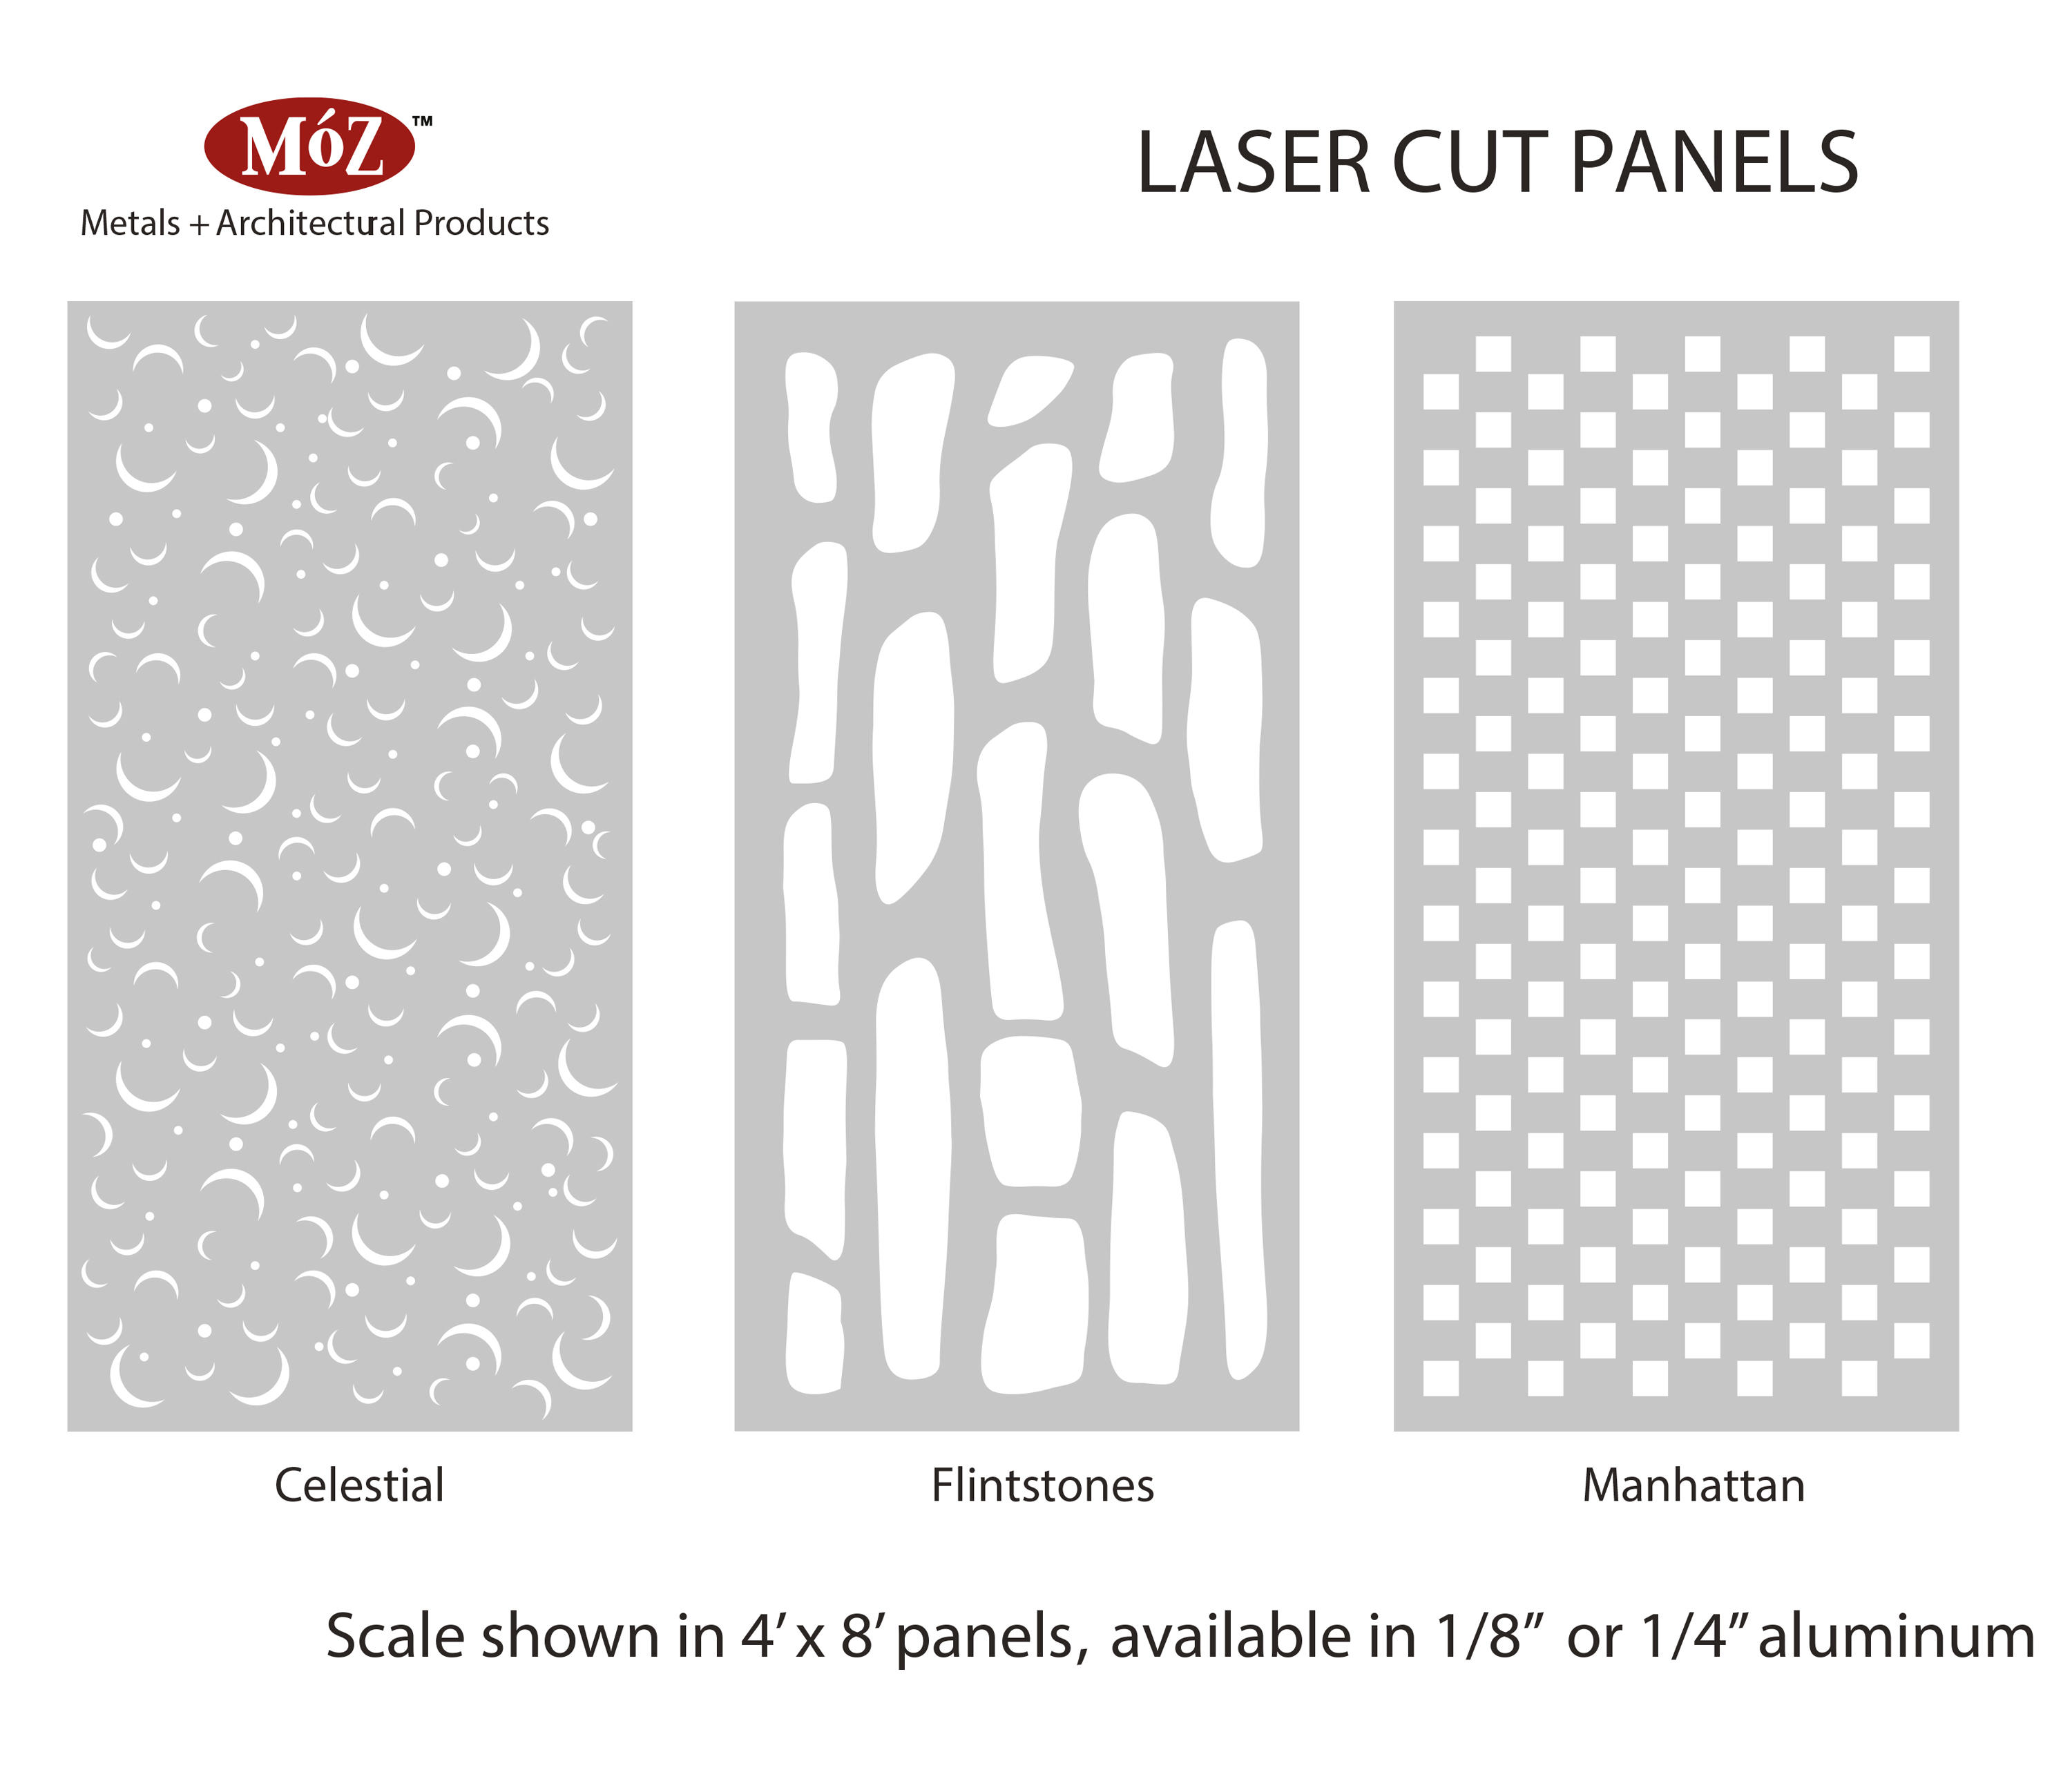 Laser Cut Laser Cut Lamp Laser Cut Patterns Laser Cut 